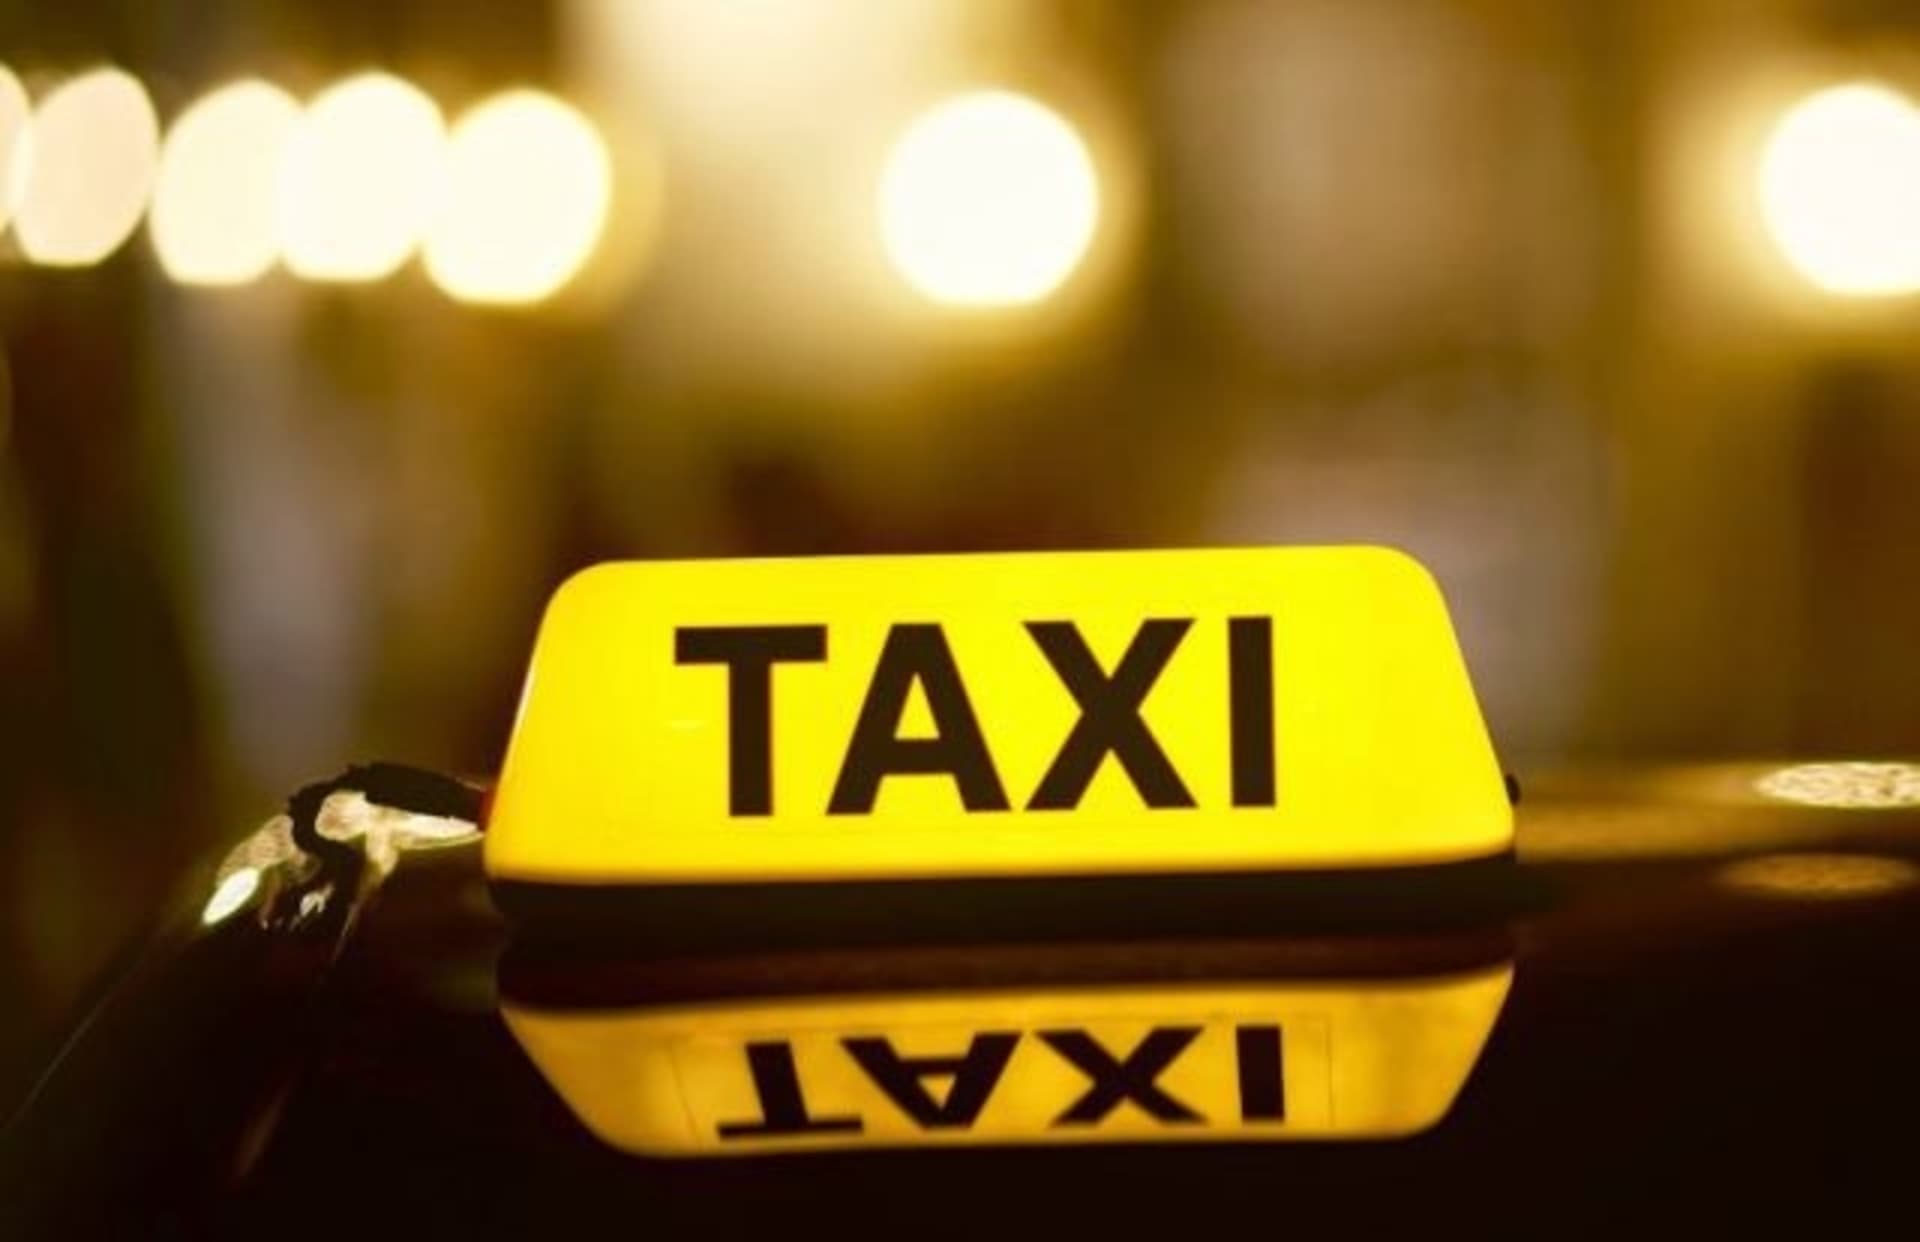 Studiu IRES: 100% dintre clujeni consideră utile aplicațiile mobile de taxi